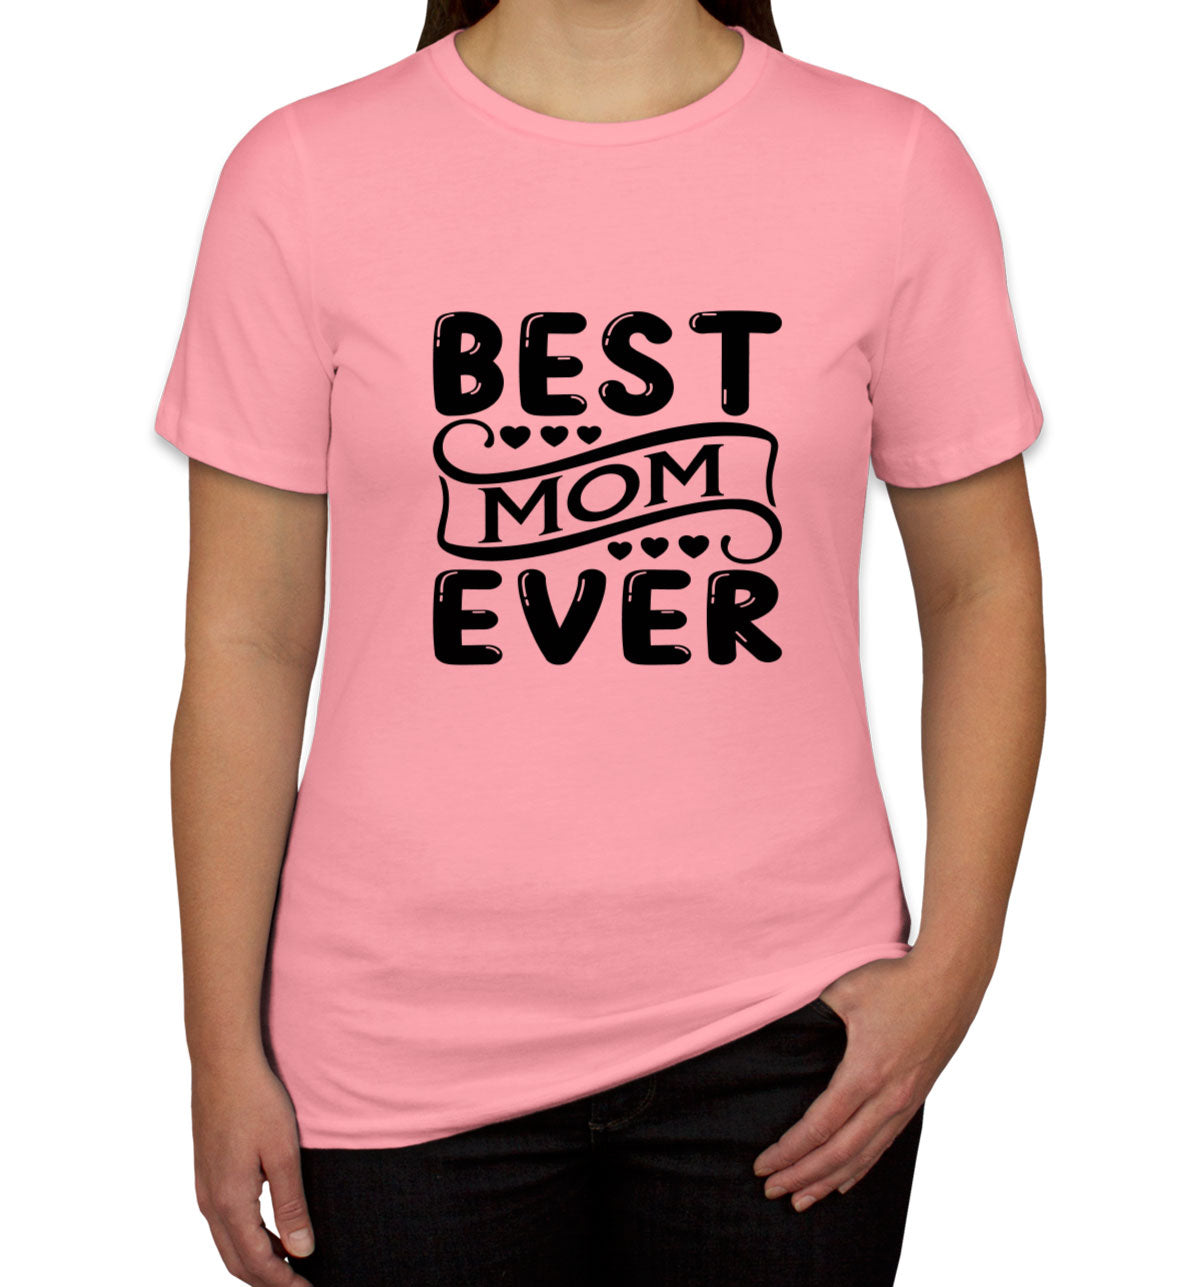 Best Mom Ever Women's T-shirt